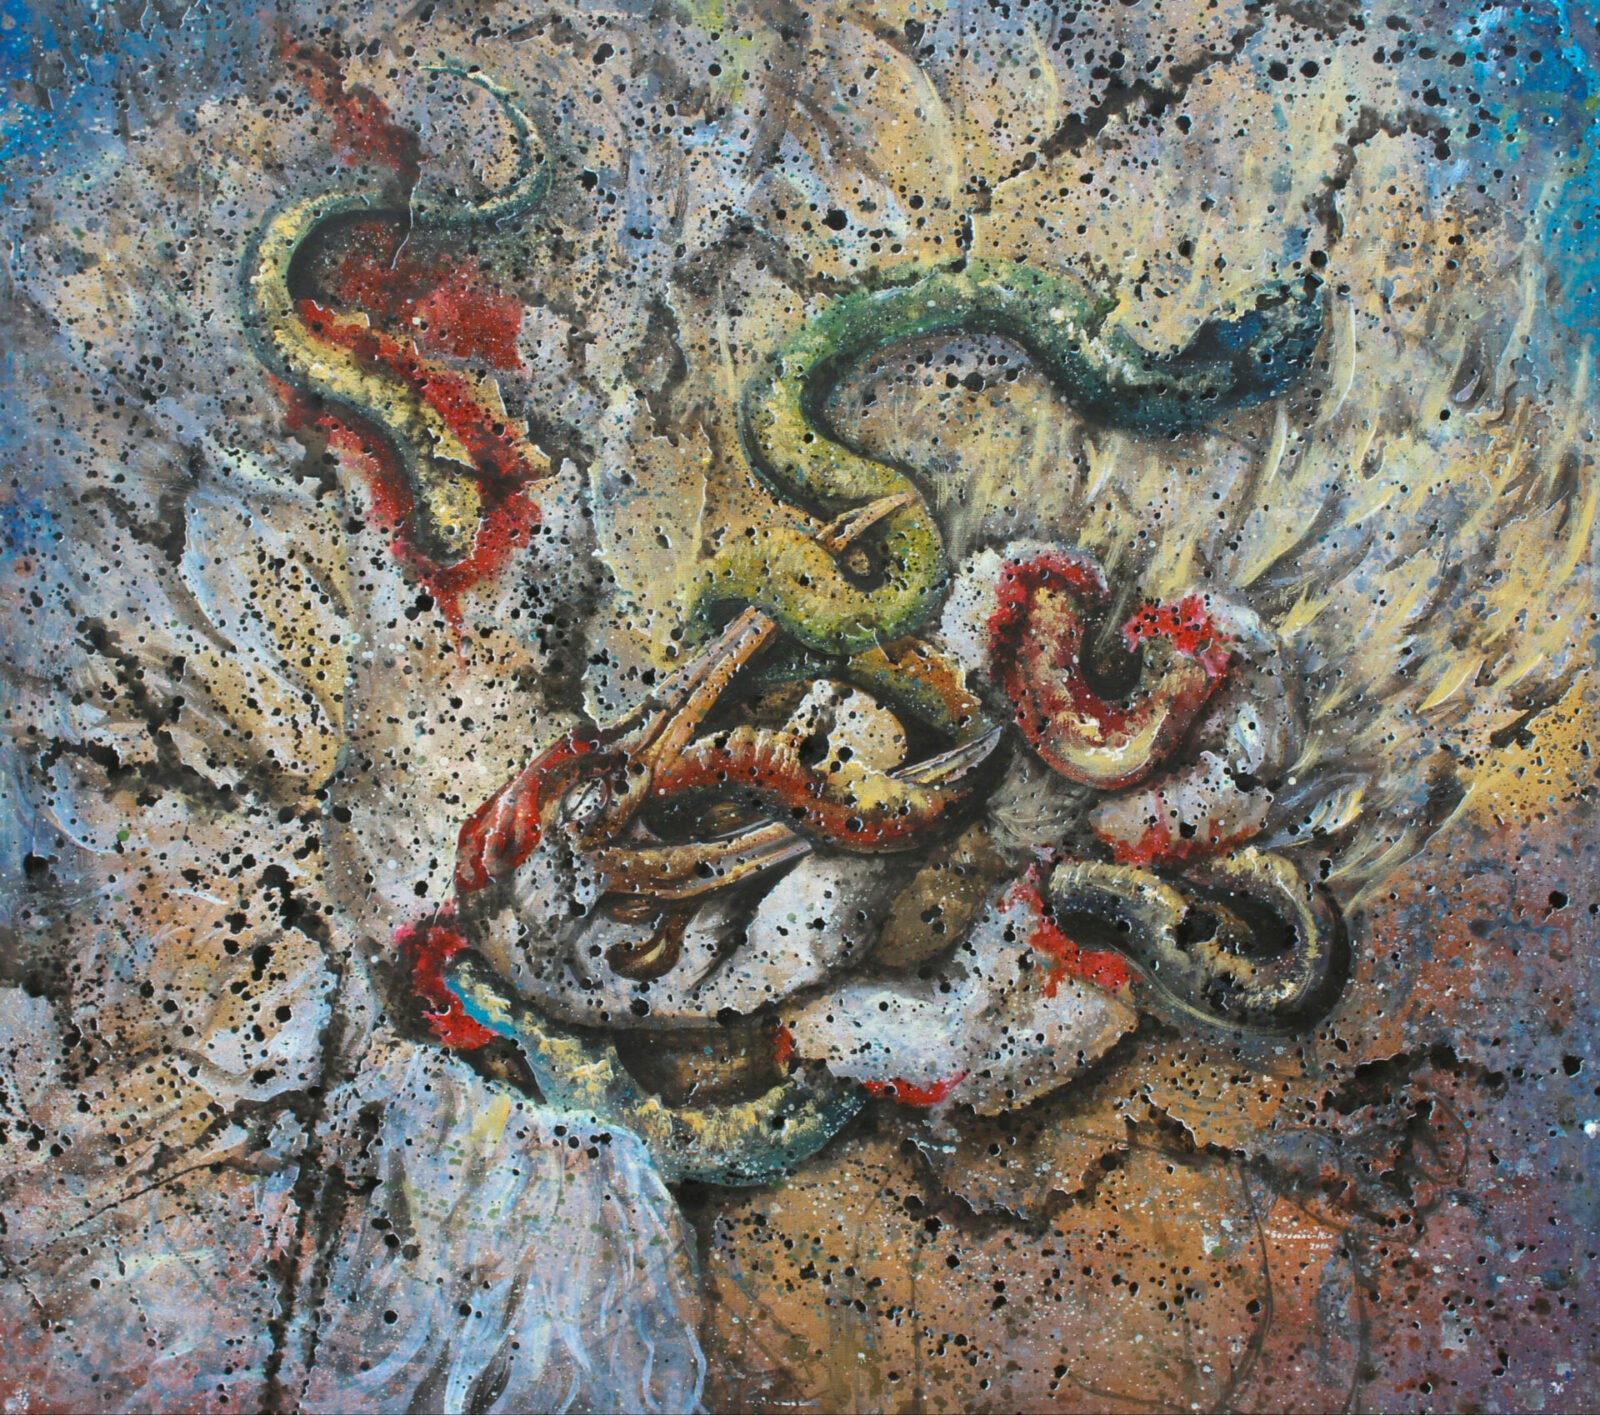 oiseau et serpent se dévorant mutuellement peinture de Sardoine Mia